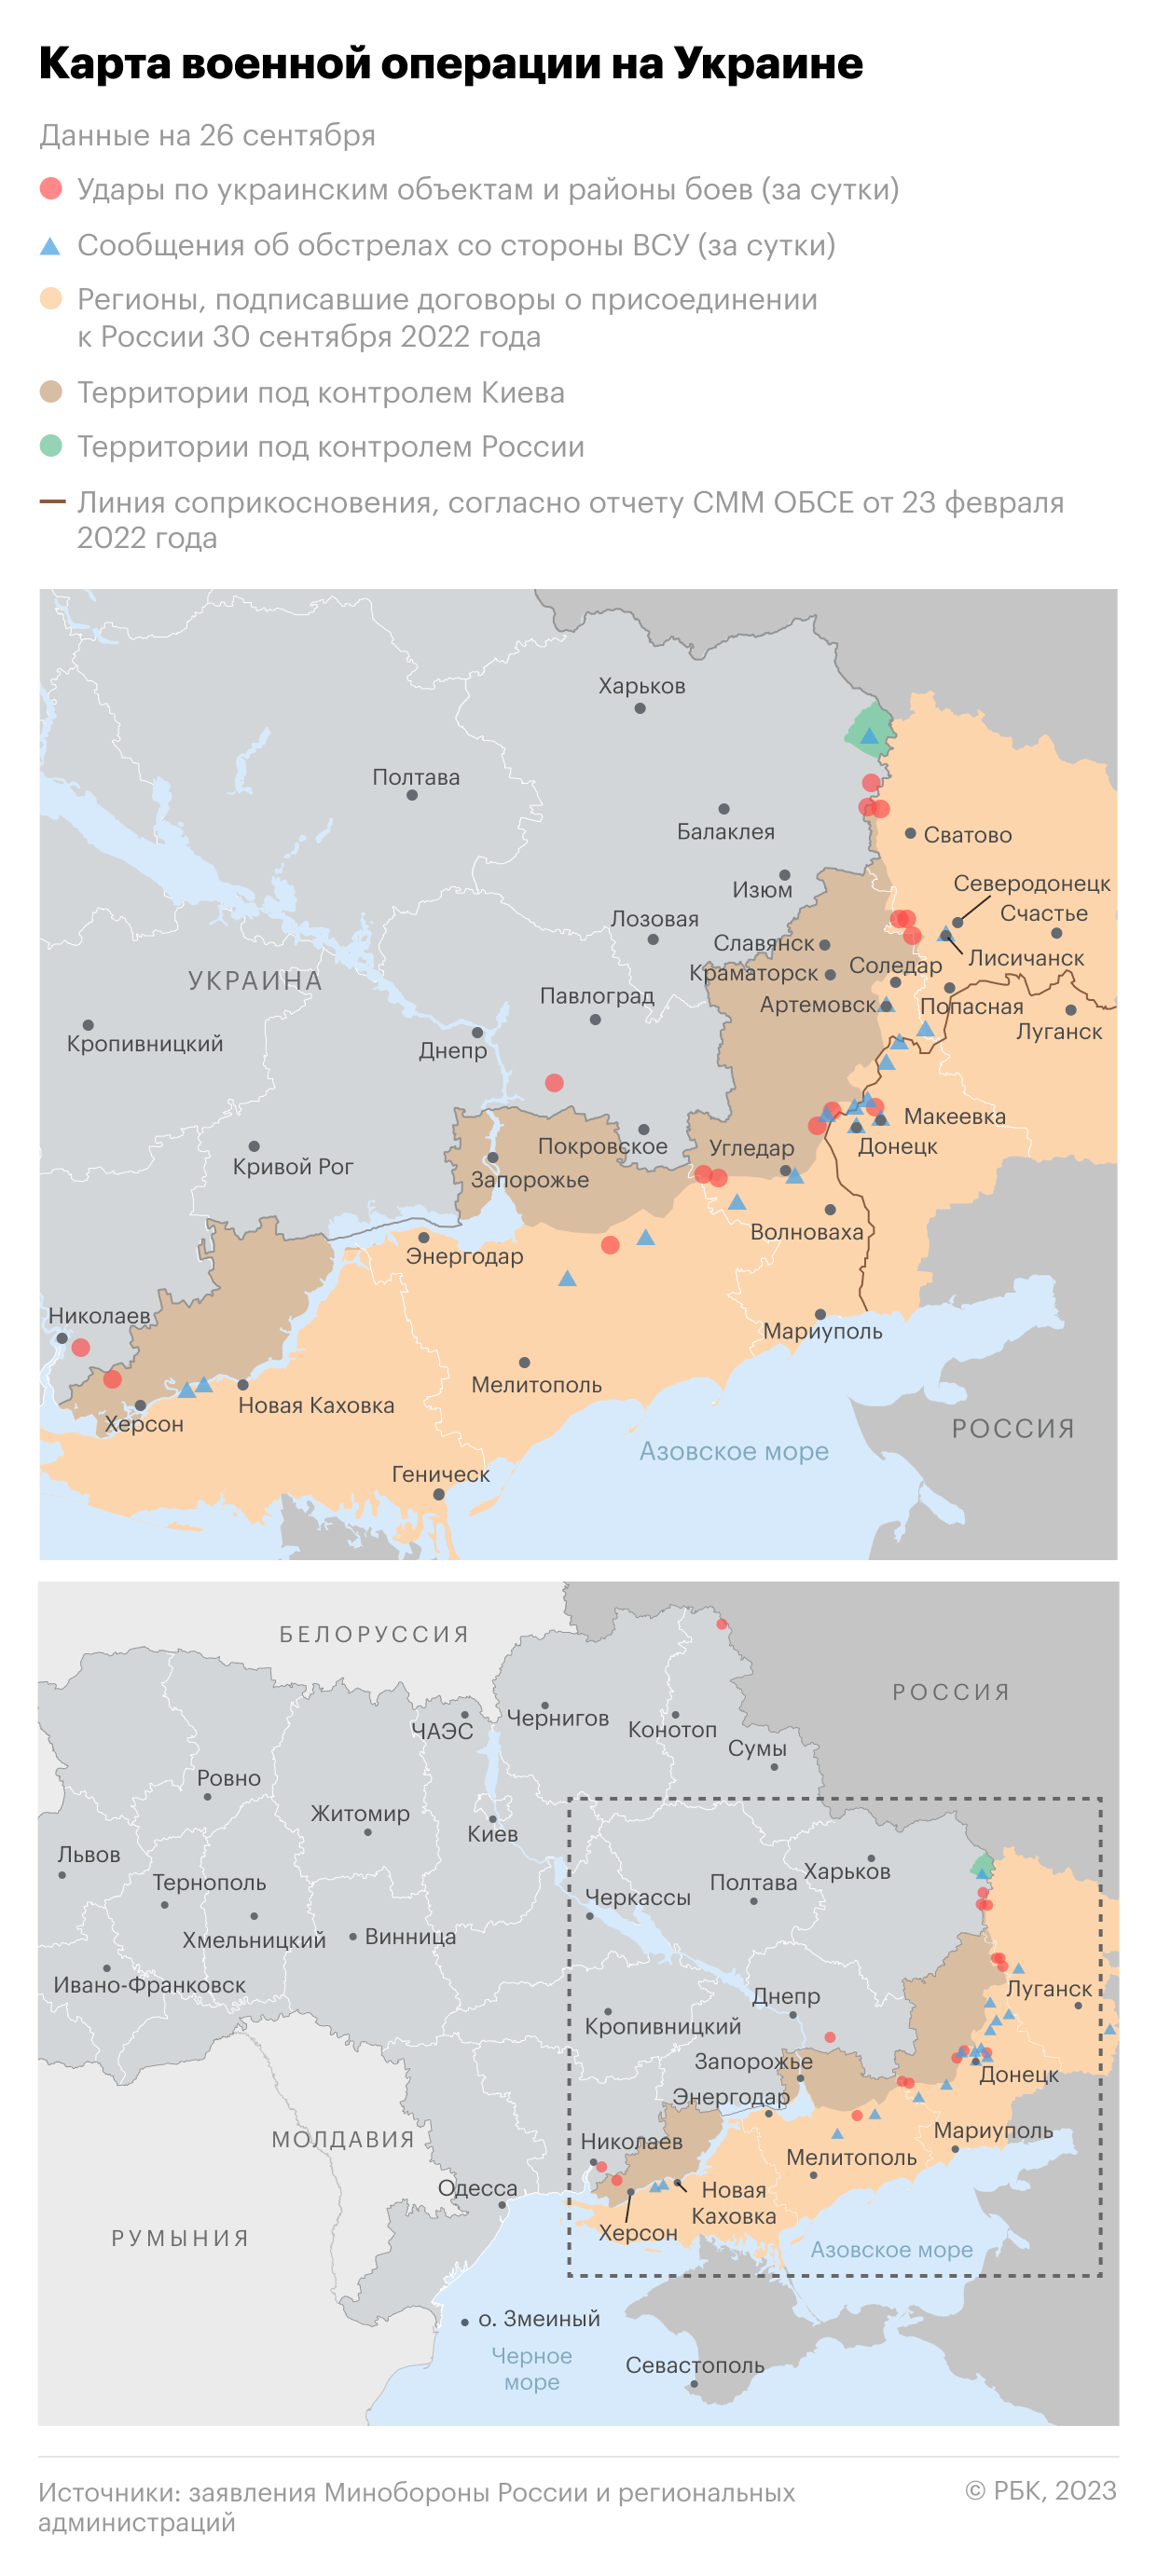 Военная операция на Украине. Карта на 26 сентября